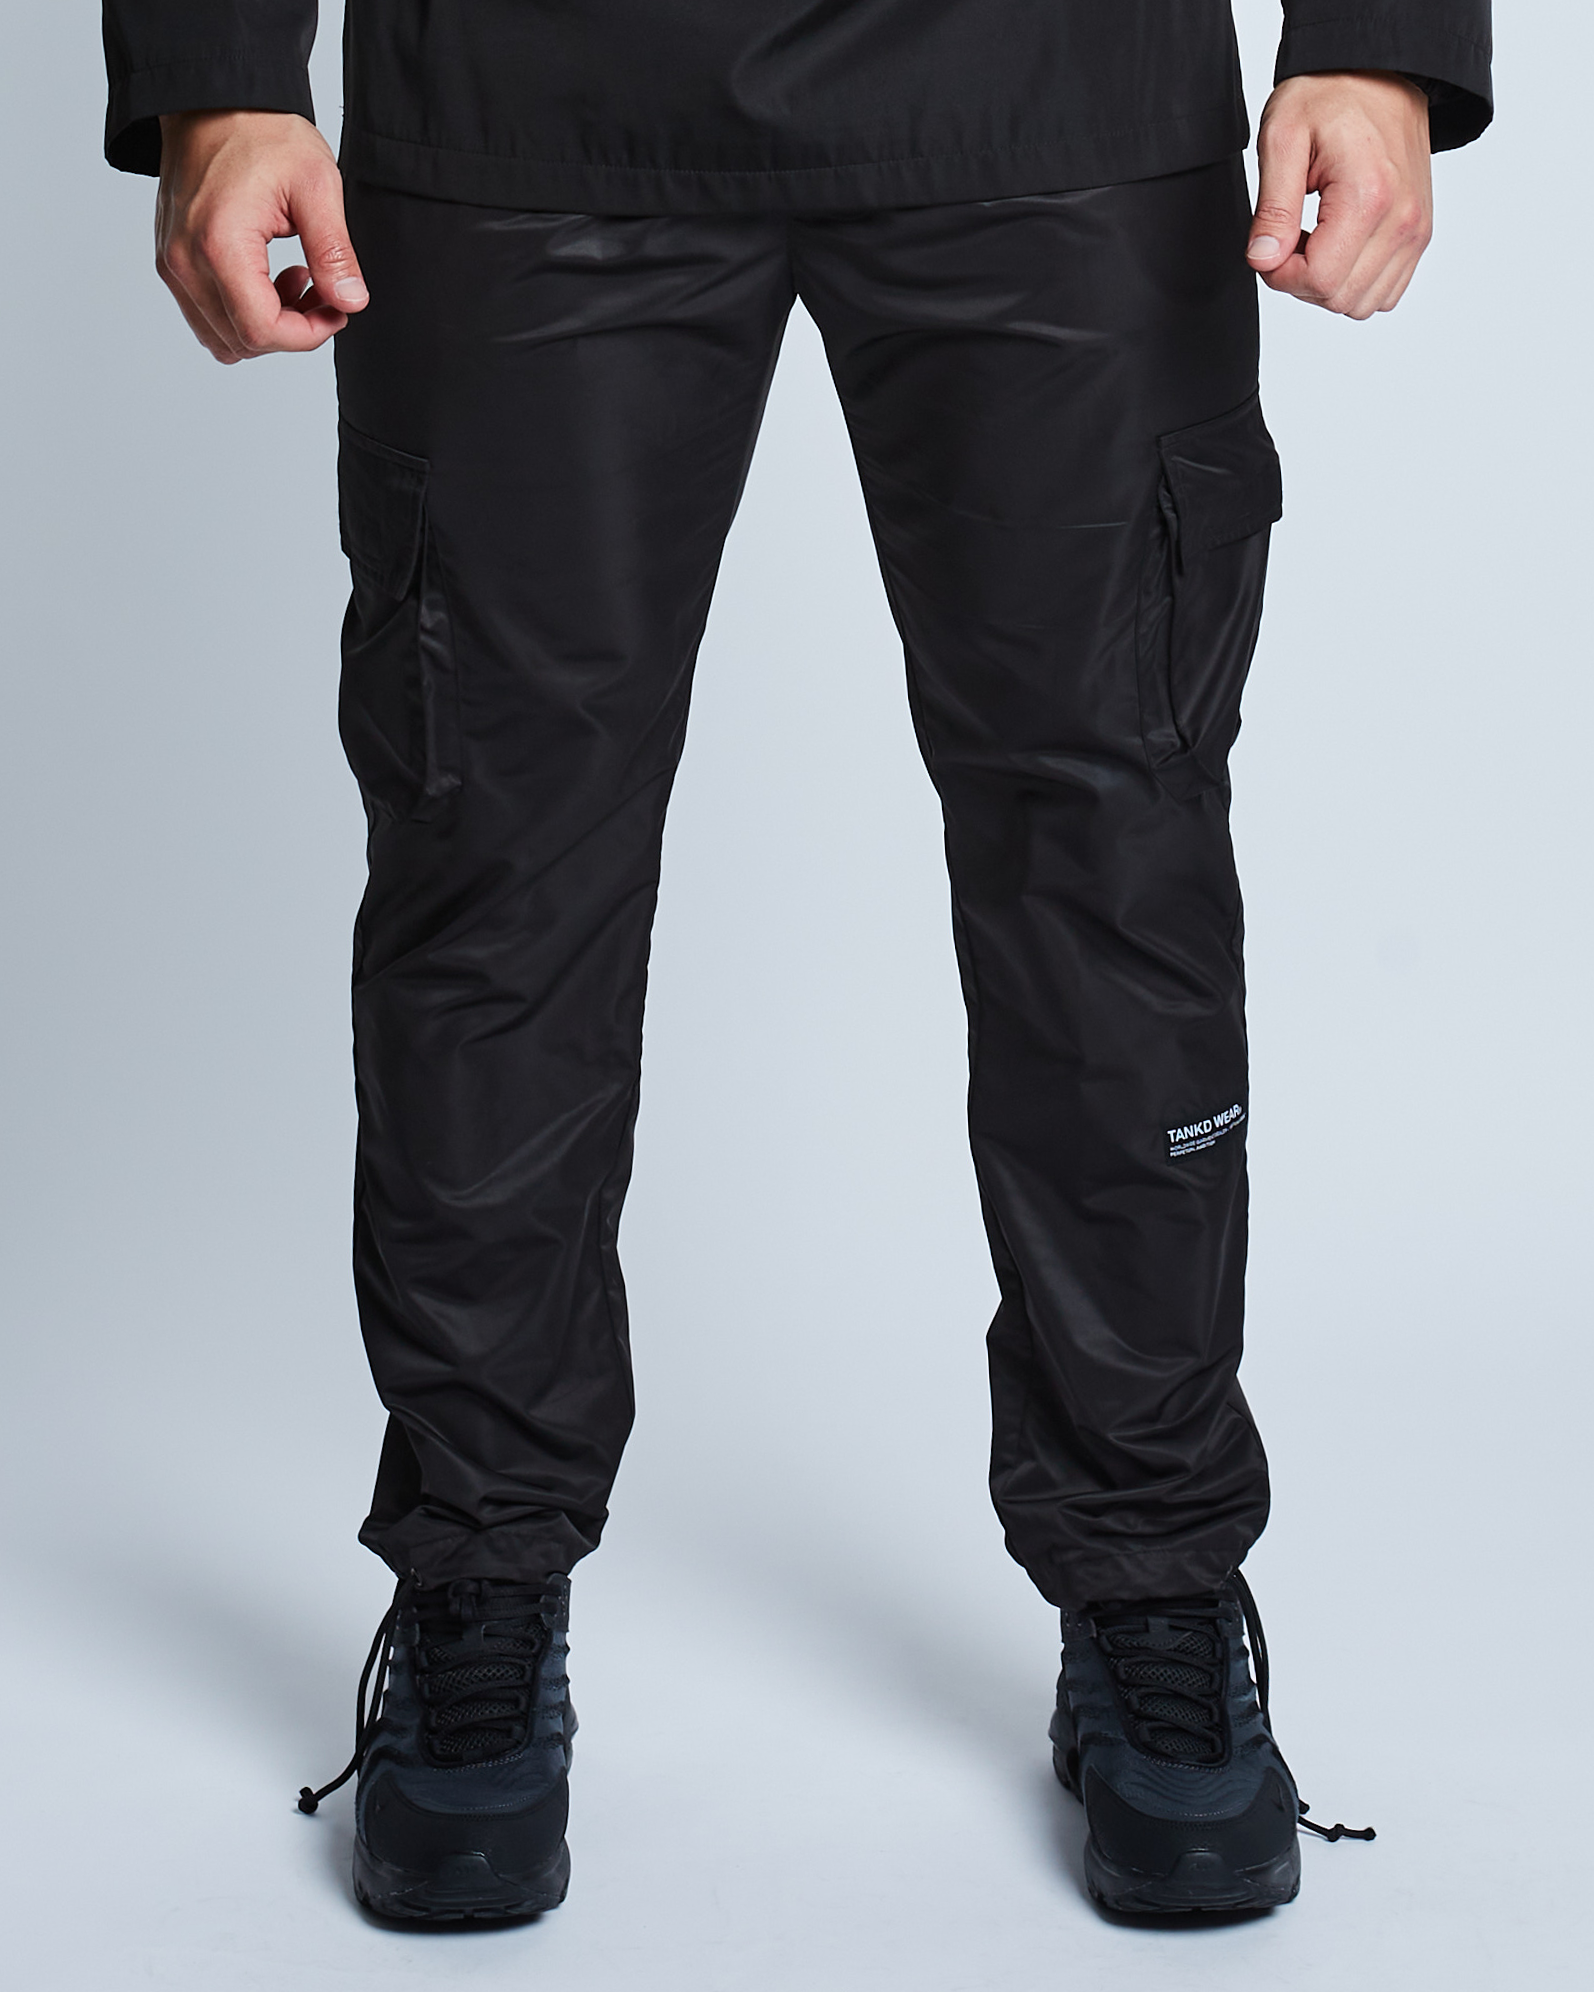 TANKD WEAR® Adjustable Cargo Pants (Black) – Tankdwear